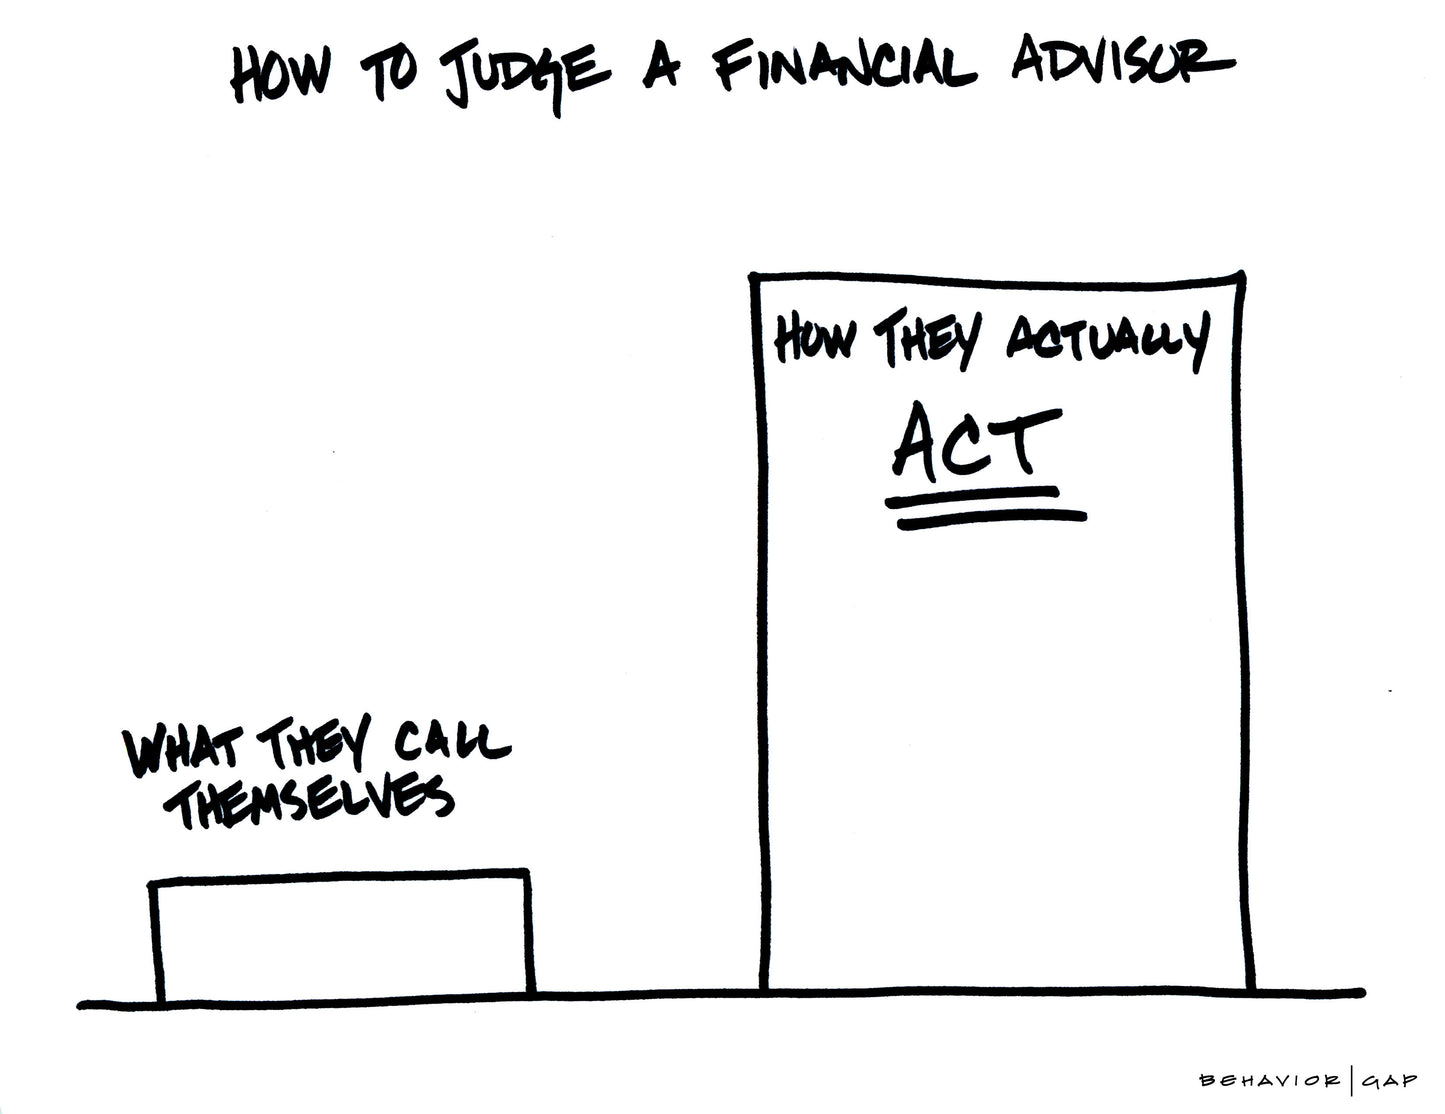 How to Judge a Financial Advisor